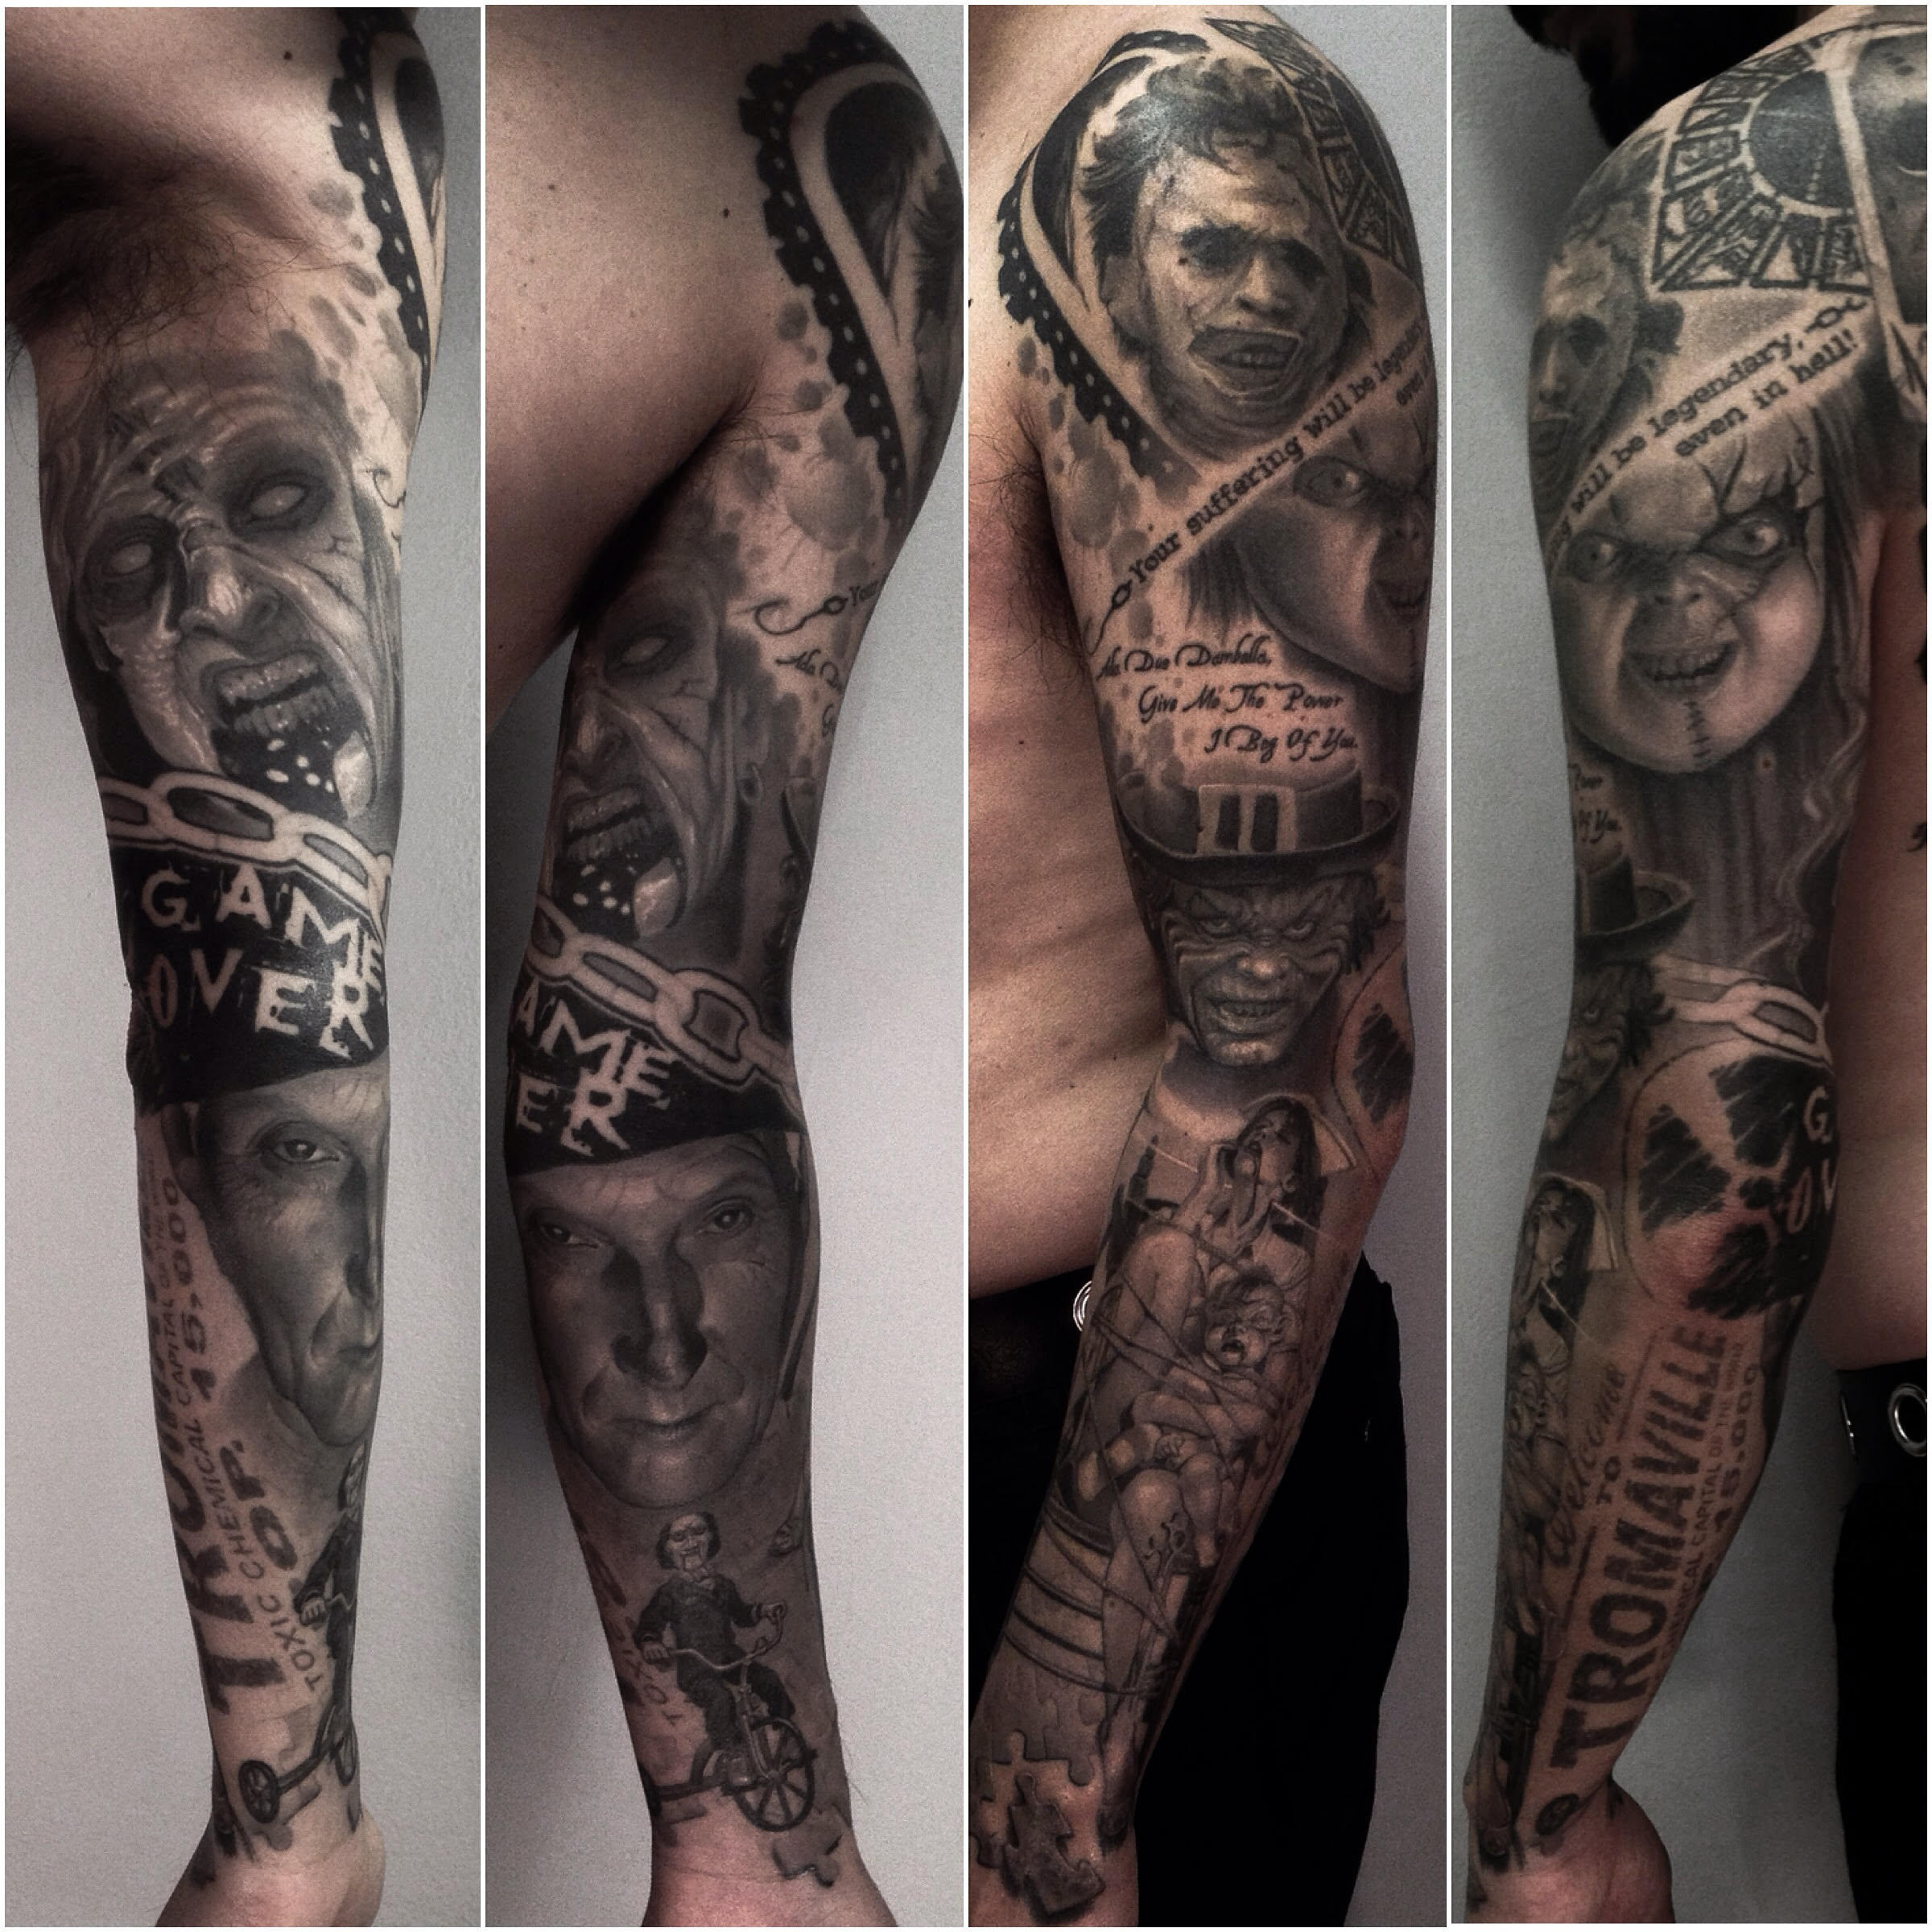 I tatuaggi di Clod the Ripper - Foto di Marco Annunziata